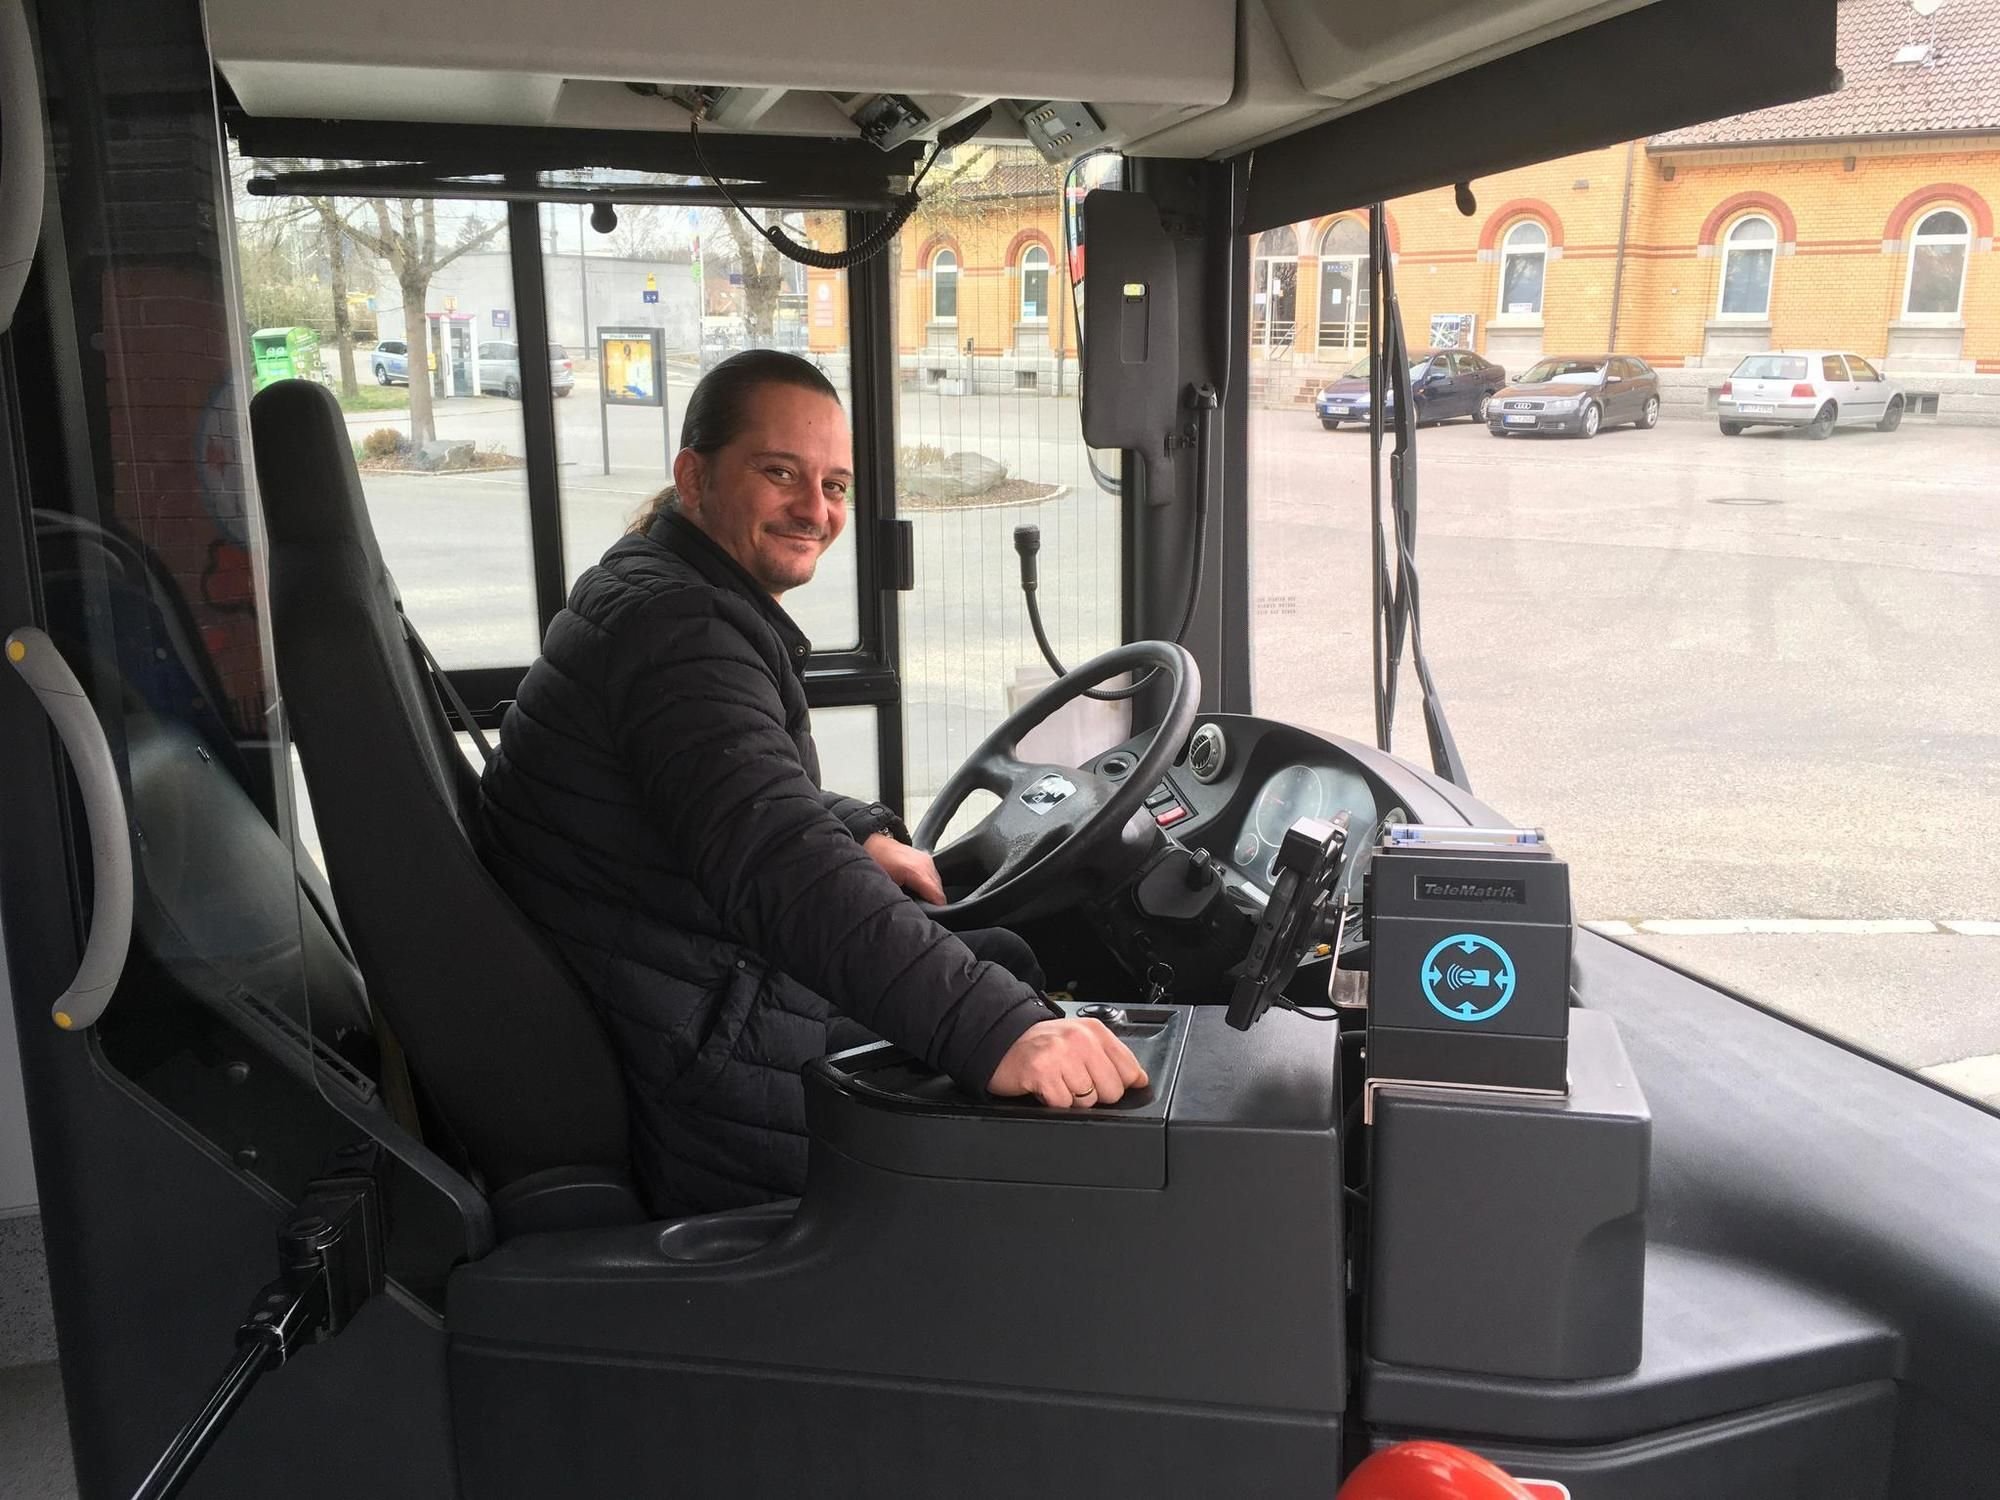 1 Stück Schulbusfahrer anerkennungsgeschenke Busfahrer auto - Temu